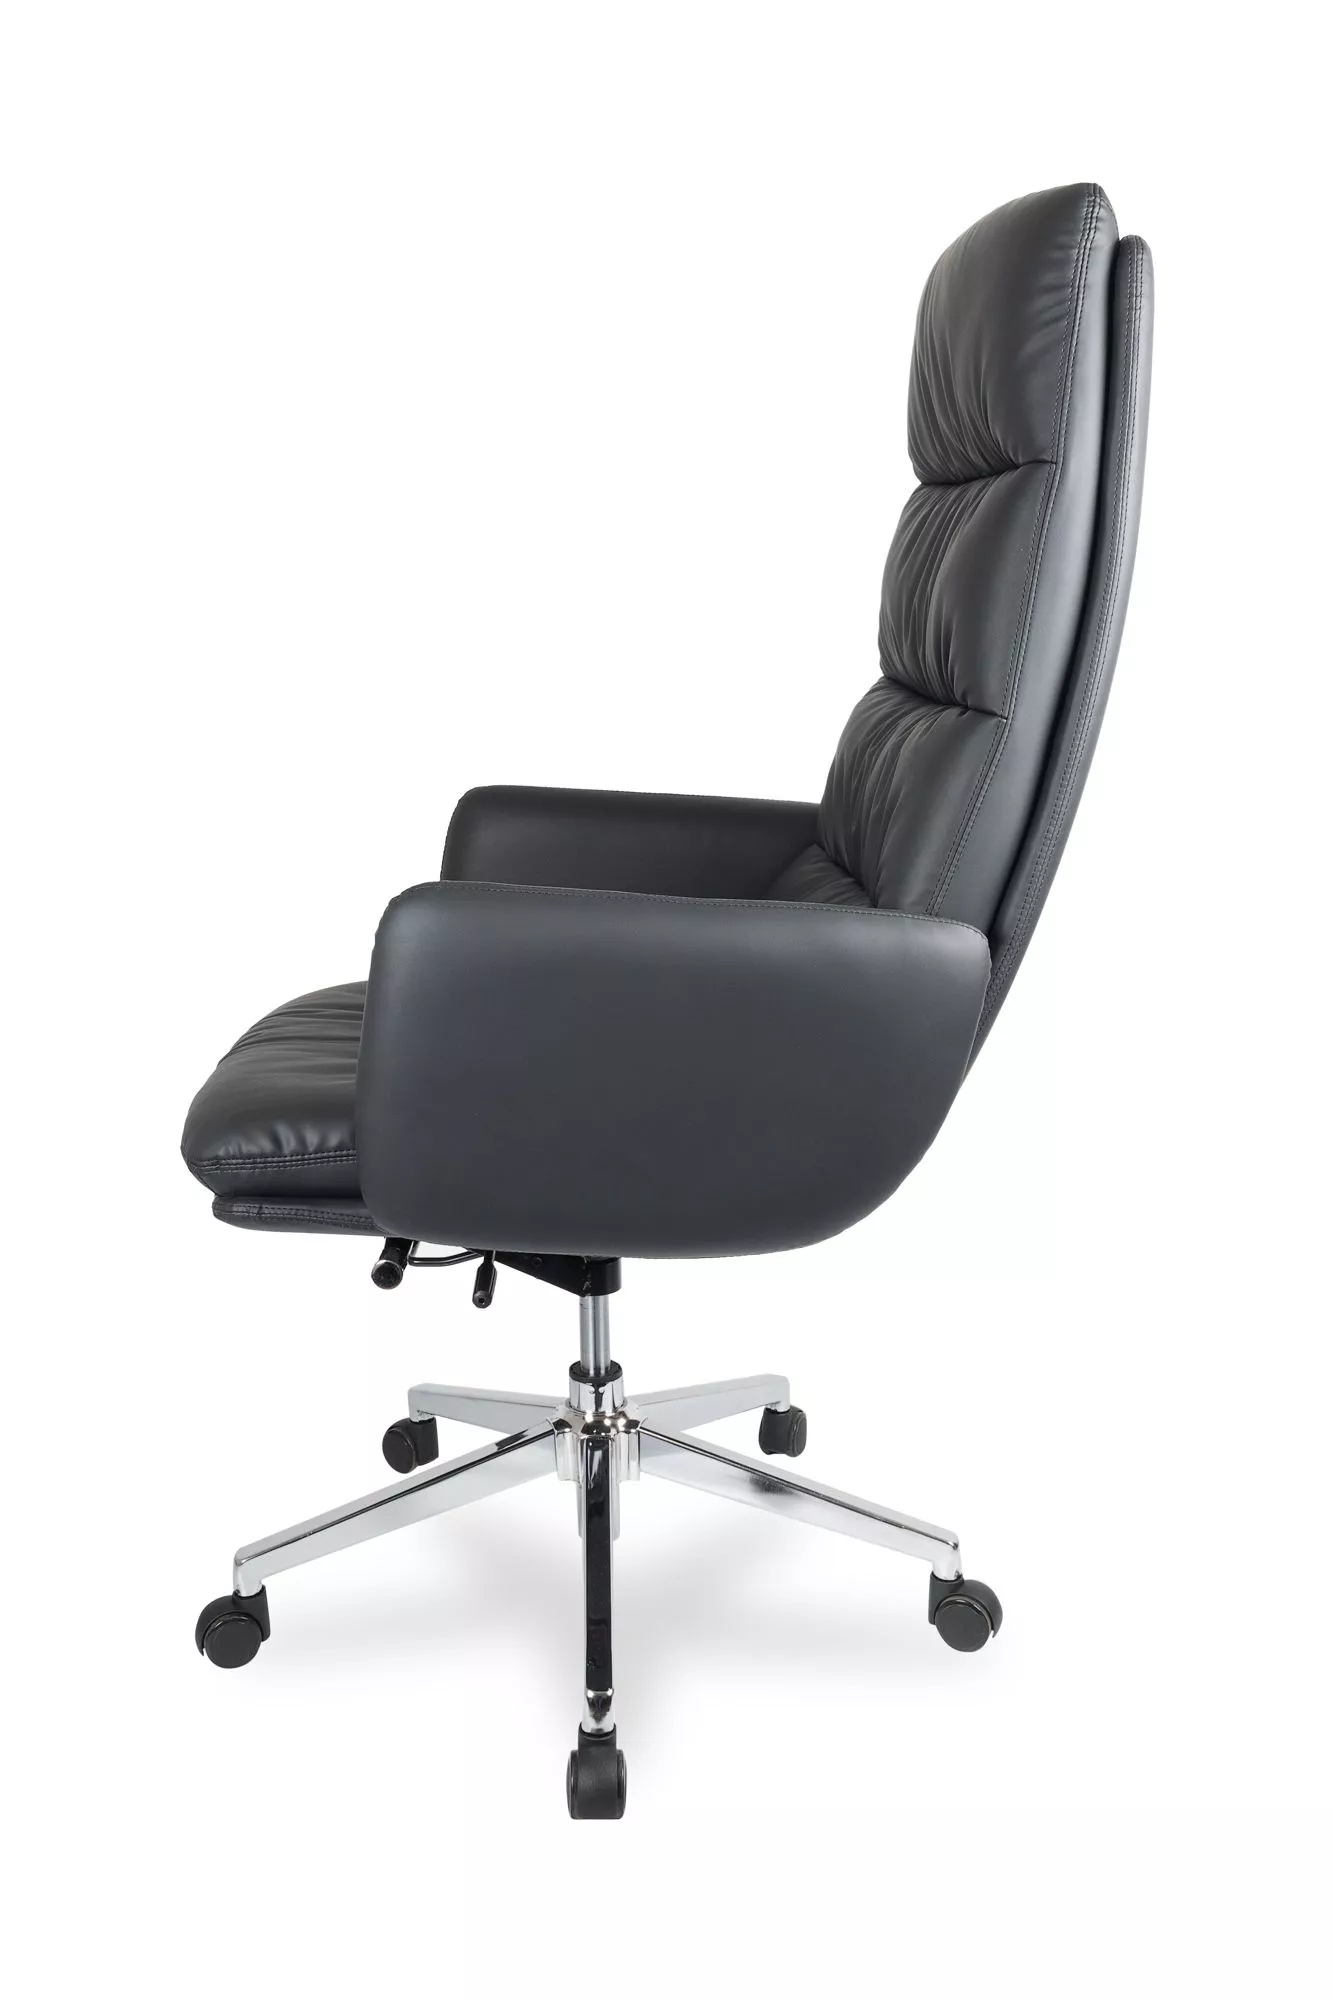 Кресло для руководителя College CLG-625 LBN-A Черный